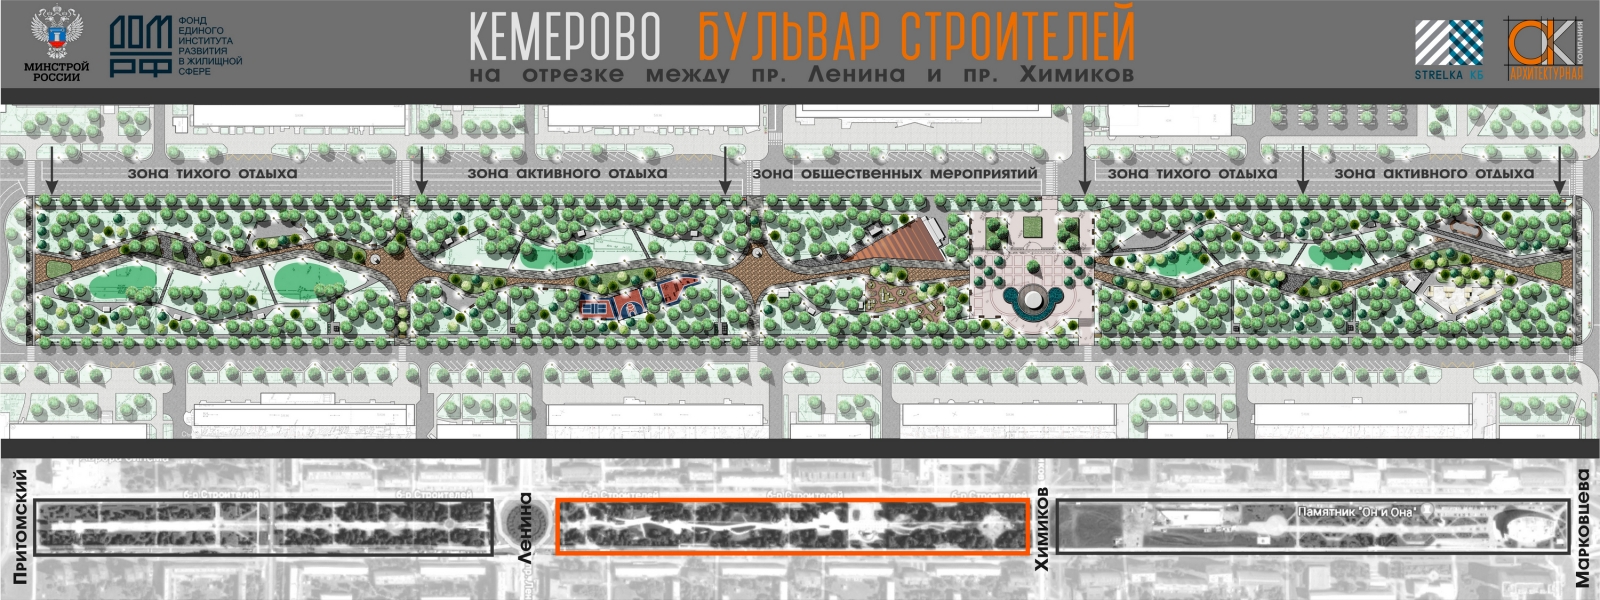 work-Реконструкция центральной части Бульвара Строителей в линейный парк в Кемерово, 1 очередь строительства